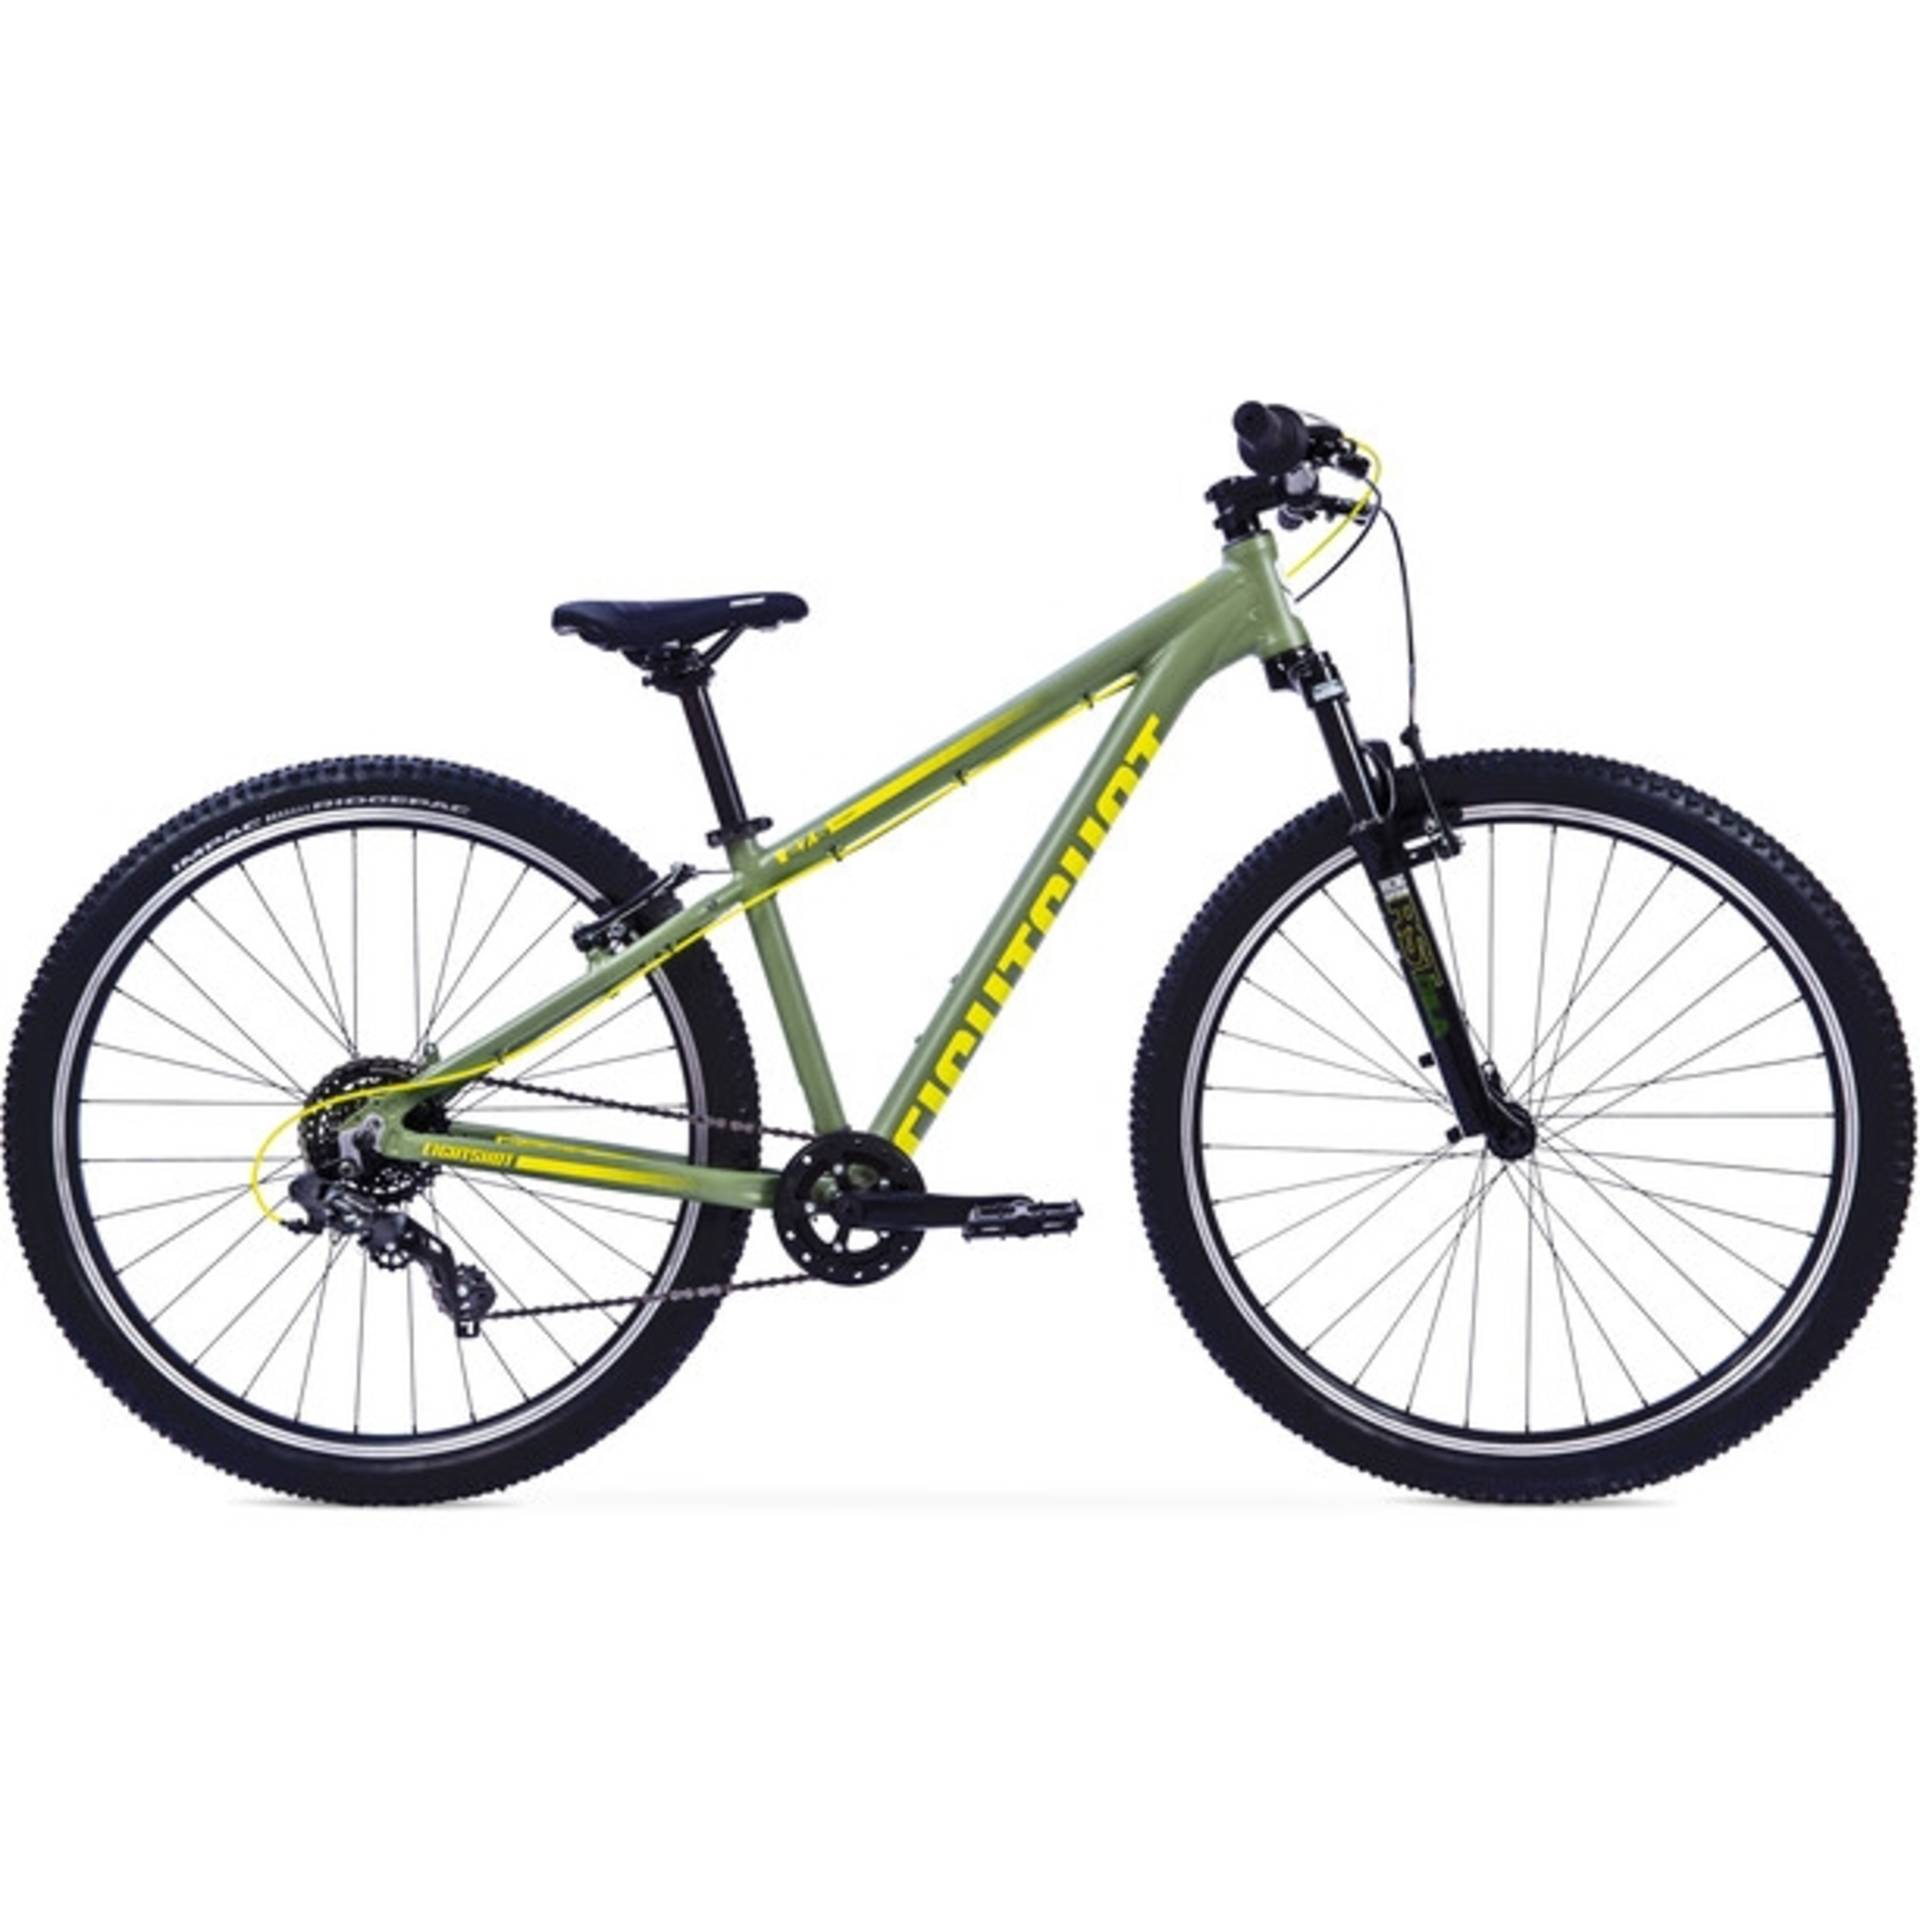 Eightshot X-COADY 275 FS Green* (S-Ride) 37cm 2022 - 1/1